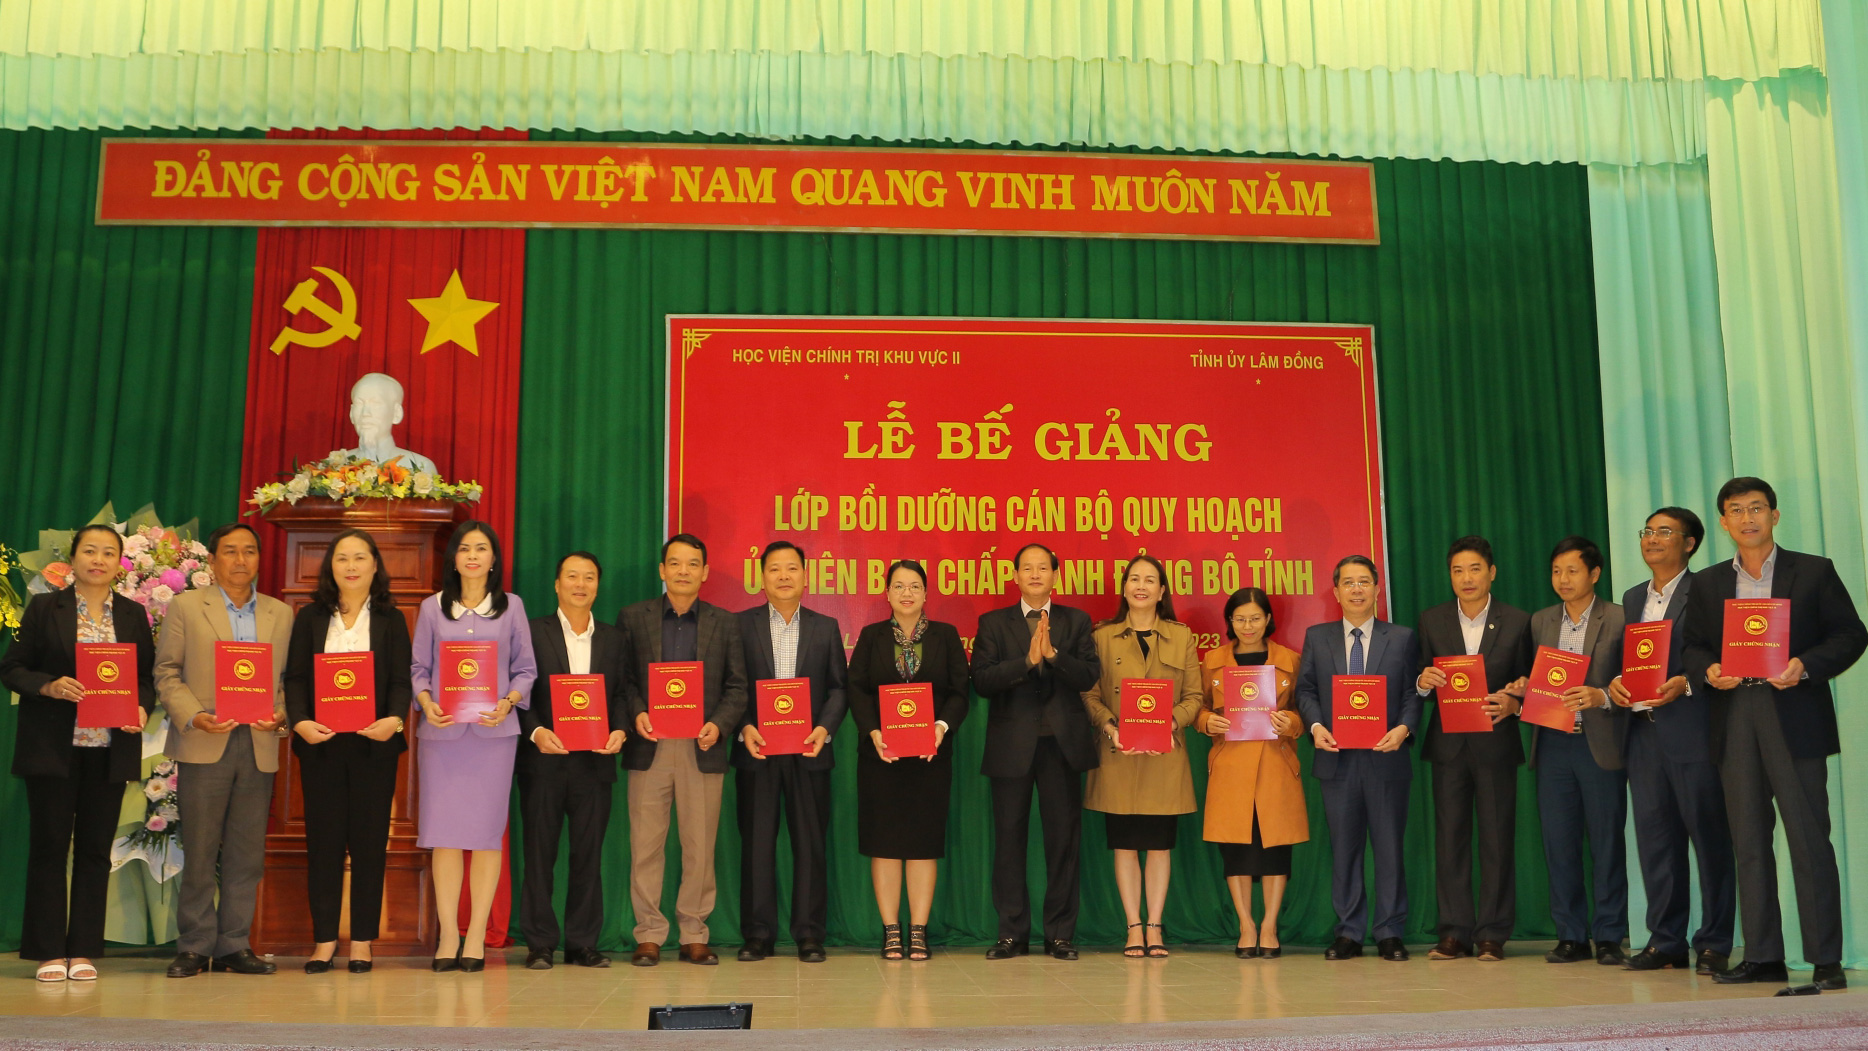 Đồng chí Nguyễn Trọng Ánh Đông - Ủy viên Ban Thường vụ, Trưởng Ban Tổ chức Tỉnh ủy, Phó Trưởng Ban Chỉ đạo lớp bồi dưỡng trao giấy chứng nhận cho các học viên